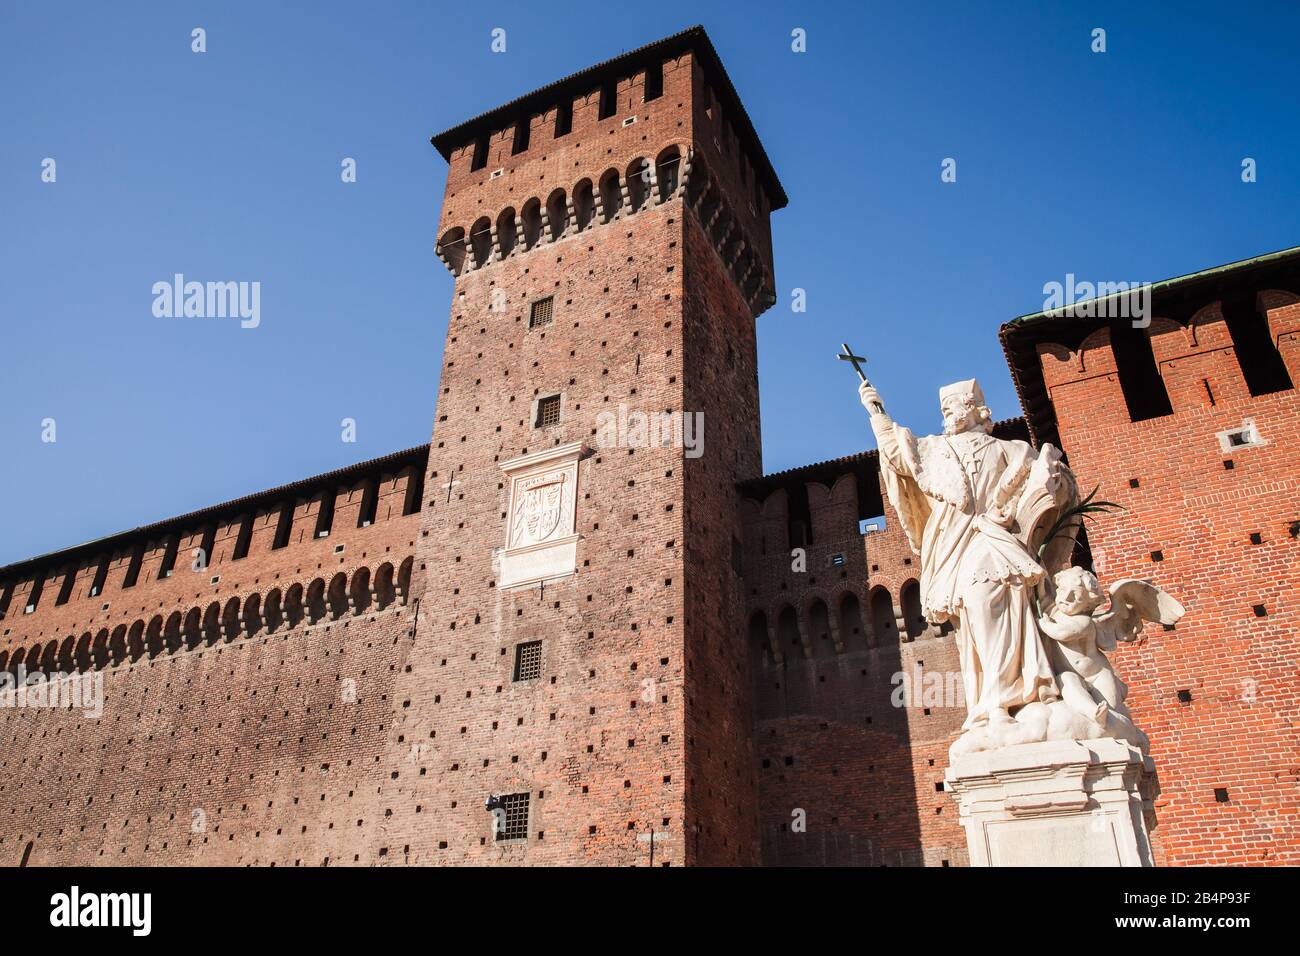 Mailand, Italien - 19. Januar 2018: Statue des heiligen Johannes von Nepomuk im Innenhof des Schlosses Sforza in Mailand Stockfoto